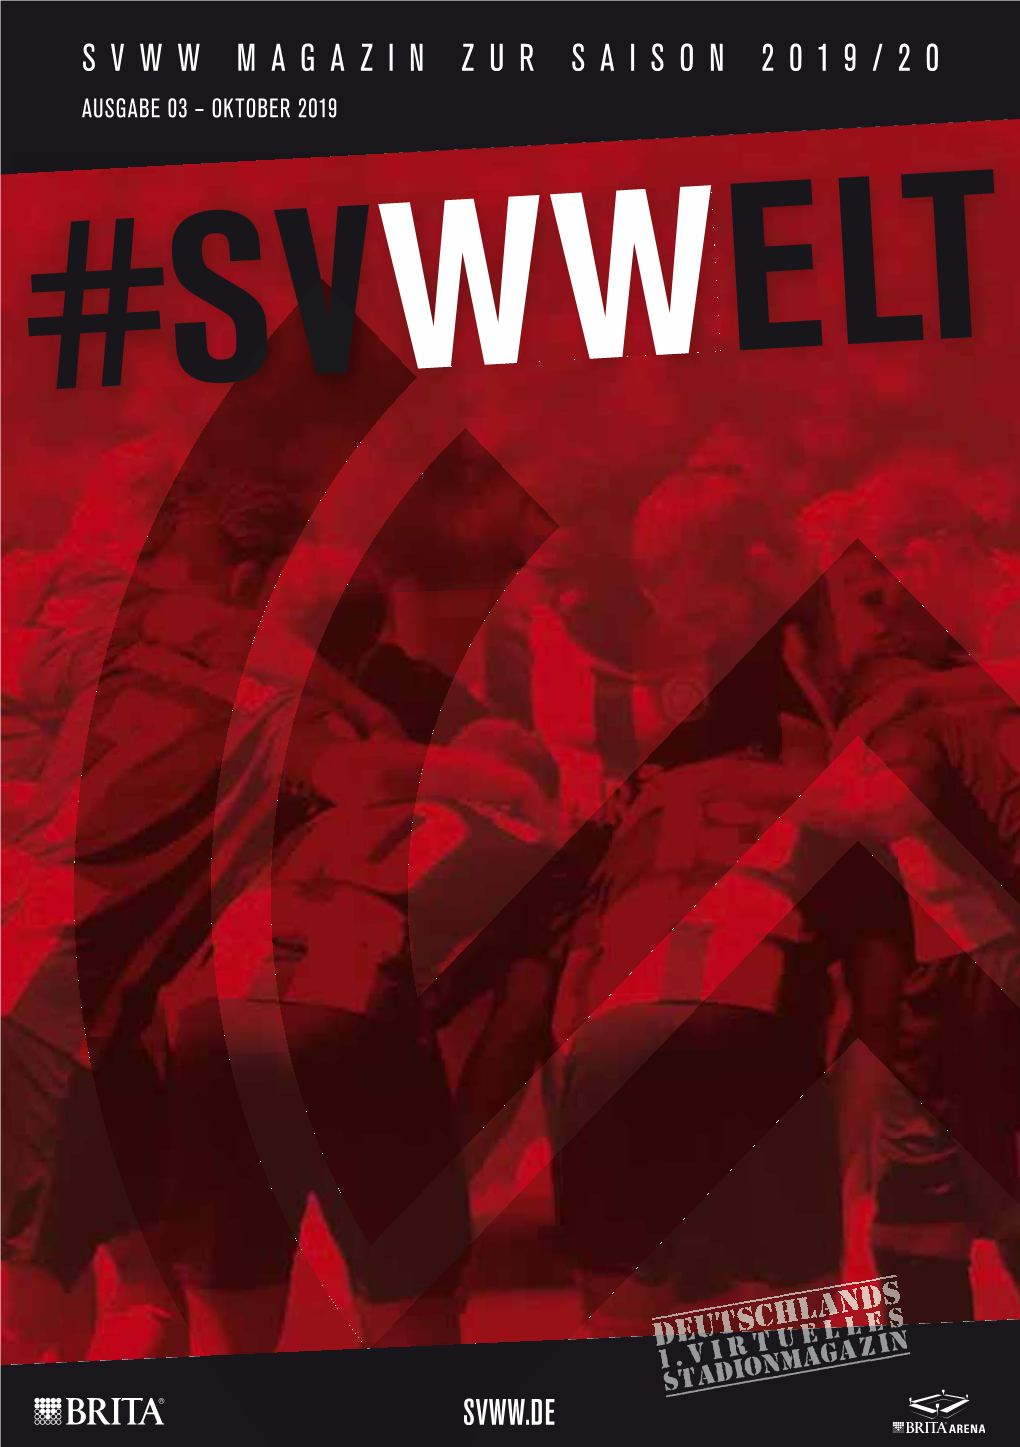 Svww Magazin Zur Saison 2019/20 Ausgabe 03 – Oktober 2019 #Svwwelt